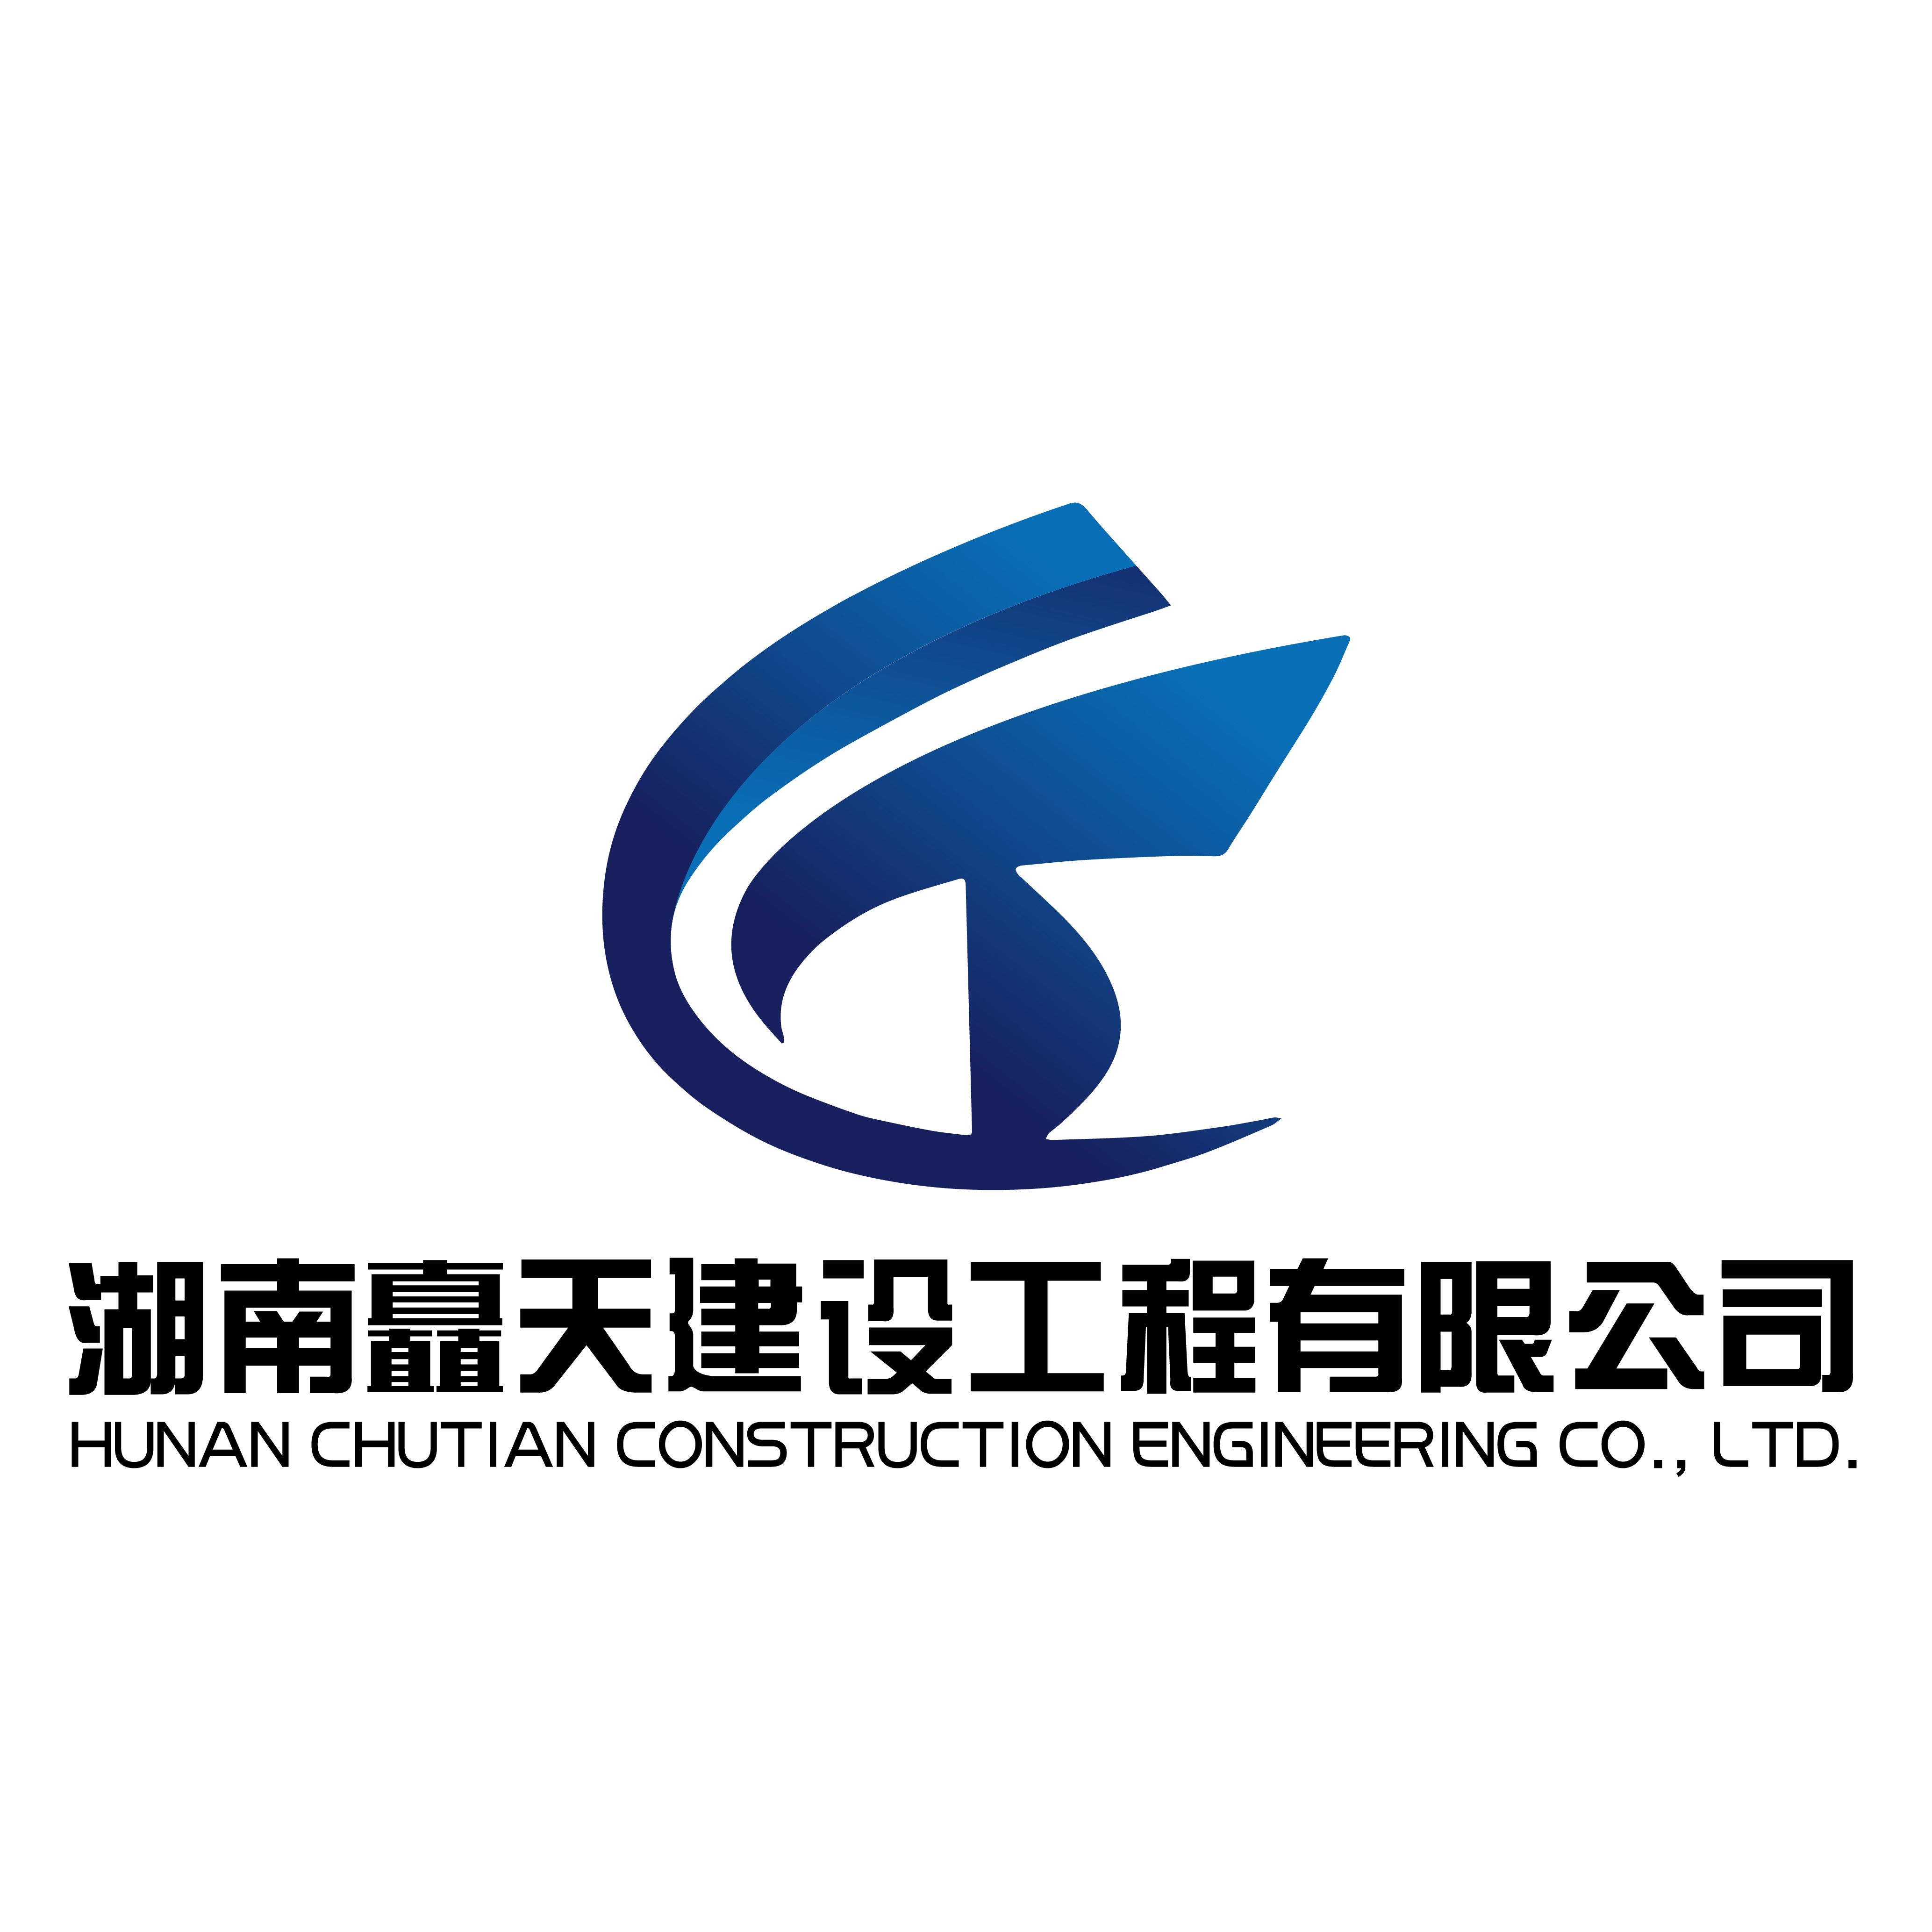 湖南鑫江劳务有限公司,湖南矗兴建设工程有限公司,以及新收购的二级